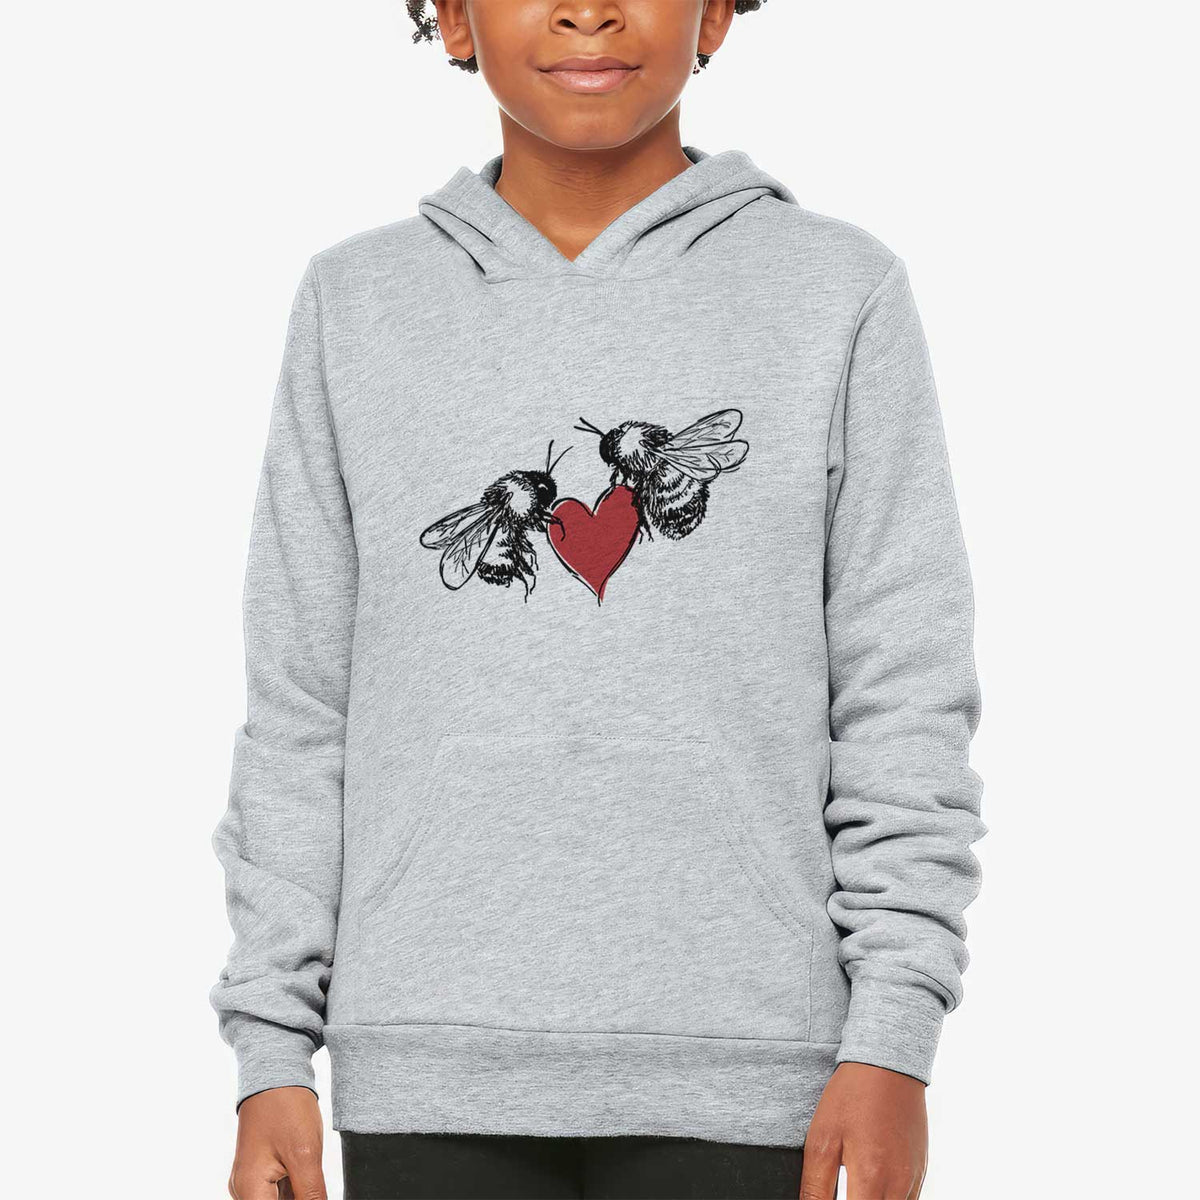 Love Bees - Youth Hoodie Sweatshirt